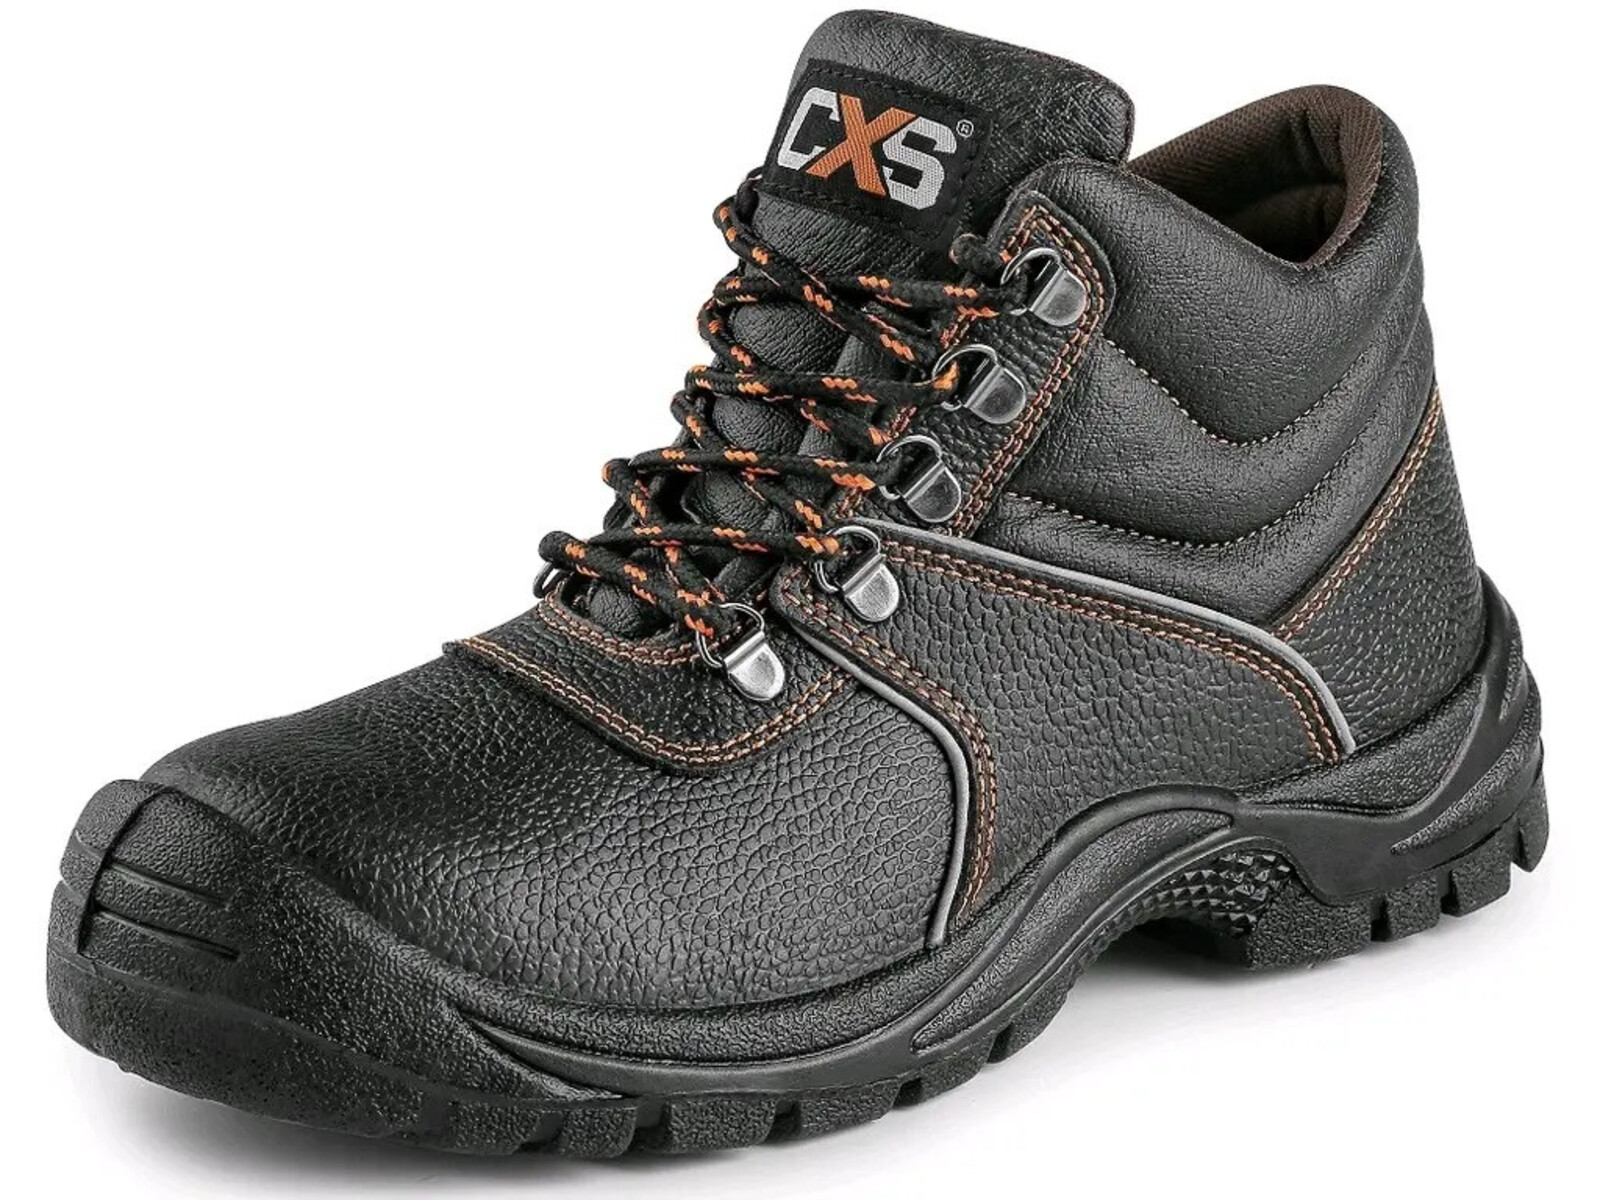 Bezpečnostná členková obuv CXS Stone Marble S2 SRC - veľkosť: 48, farba: čierna/oranžová